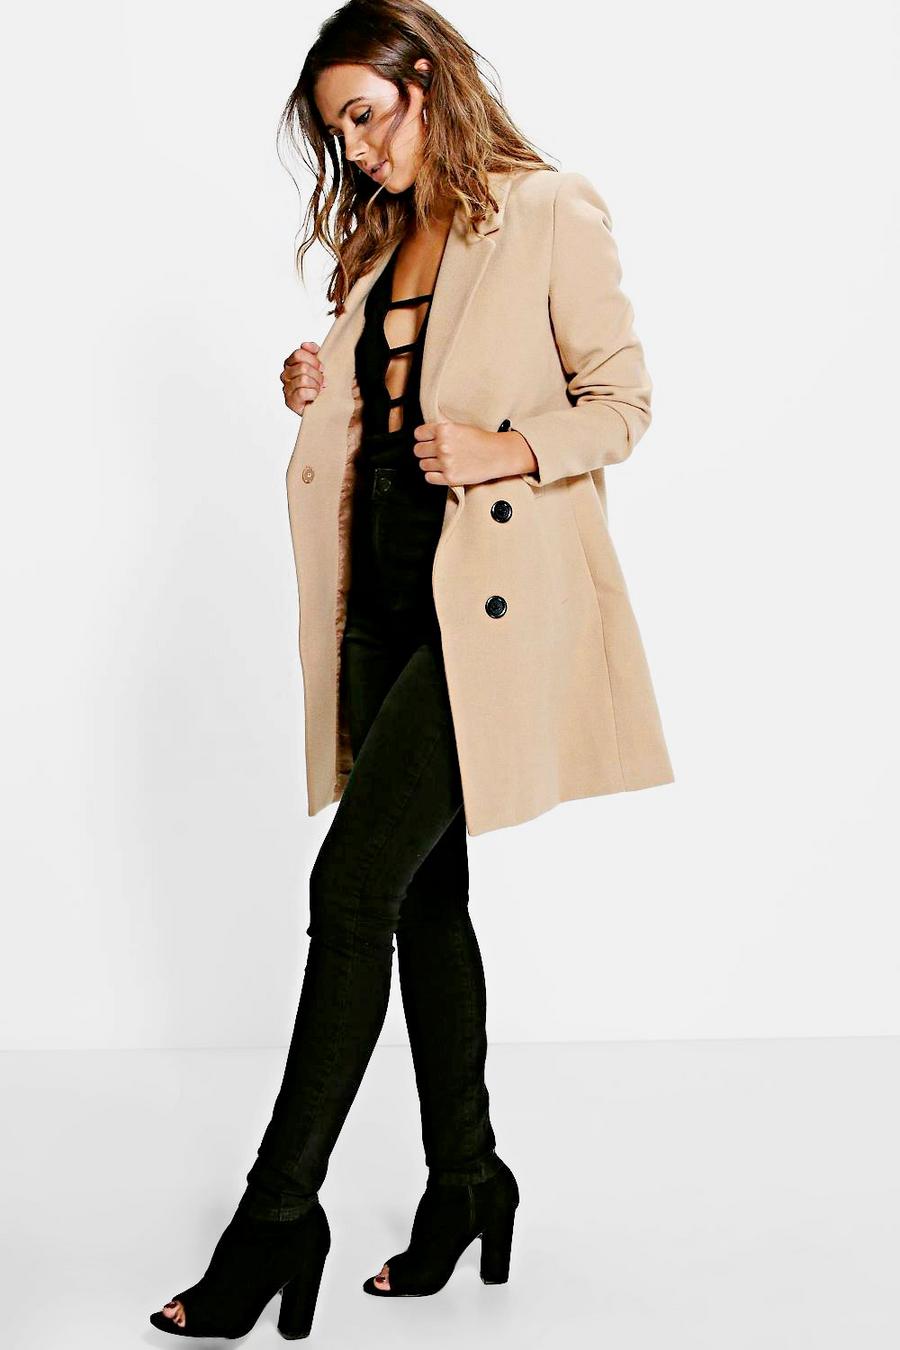 Duster Coats | Women's Duster Coats & Jackets | boohoo